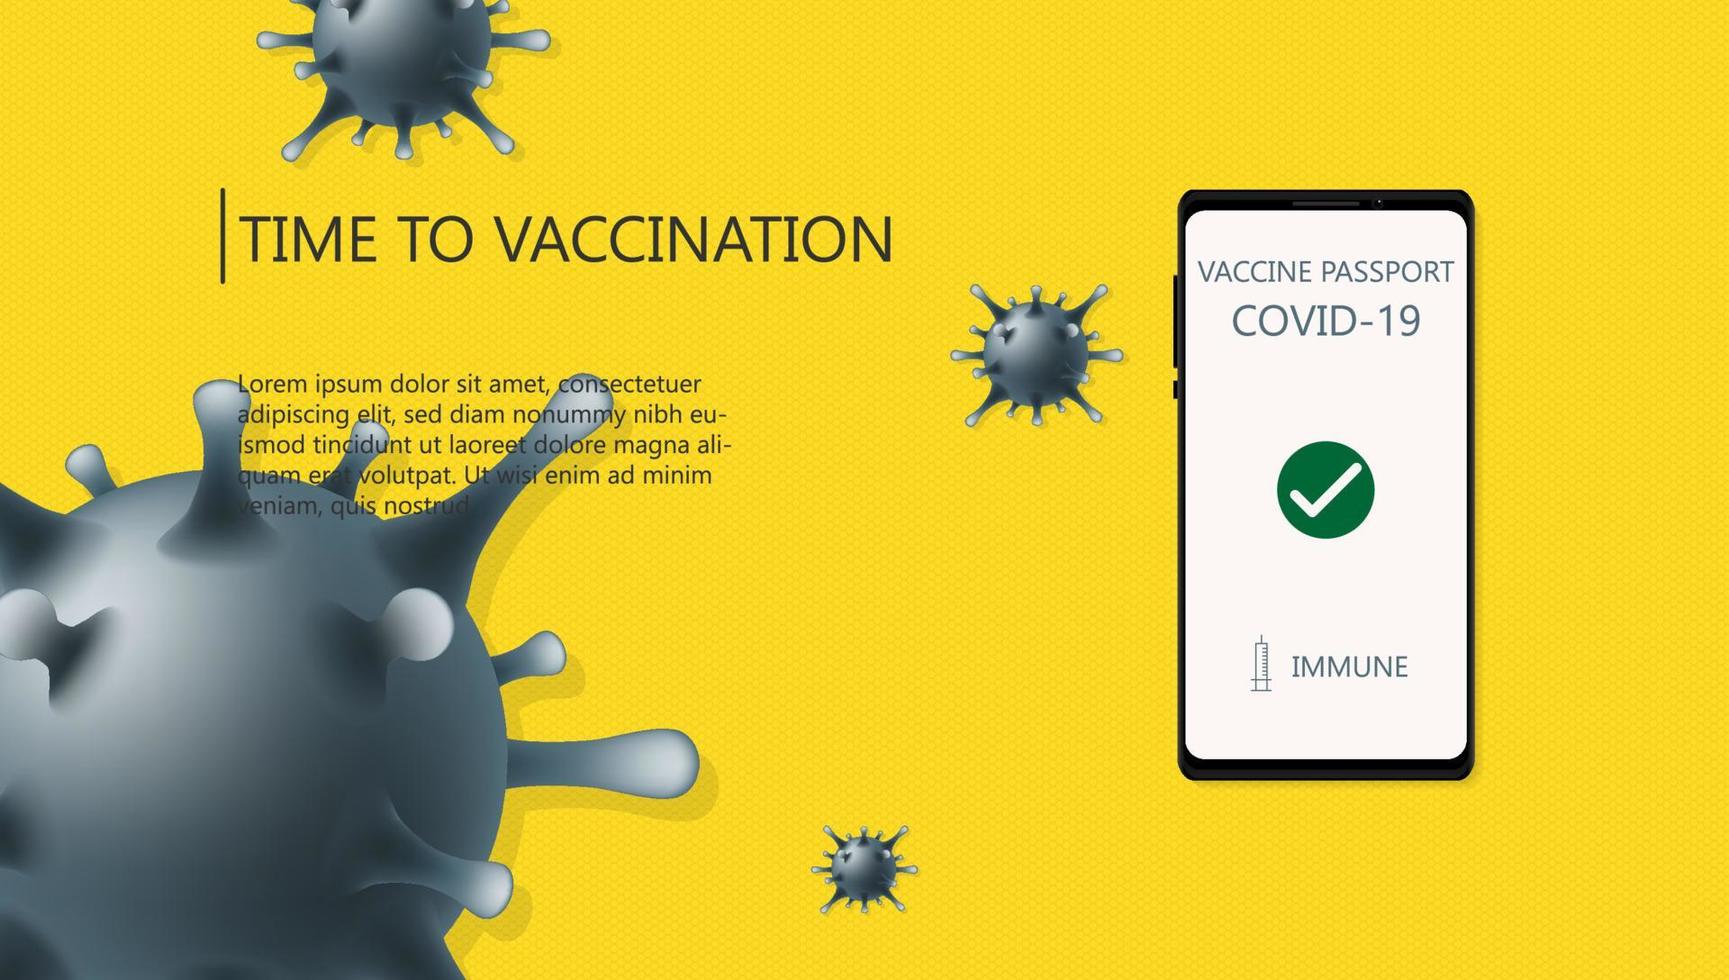 Covid-19 vaccinationskampanj medvetenhet på smartphone-app med vaccinpassgodkänt testkoncept, ljusgul bakgrund. vektor